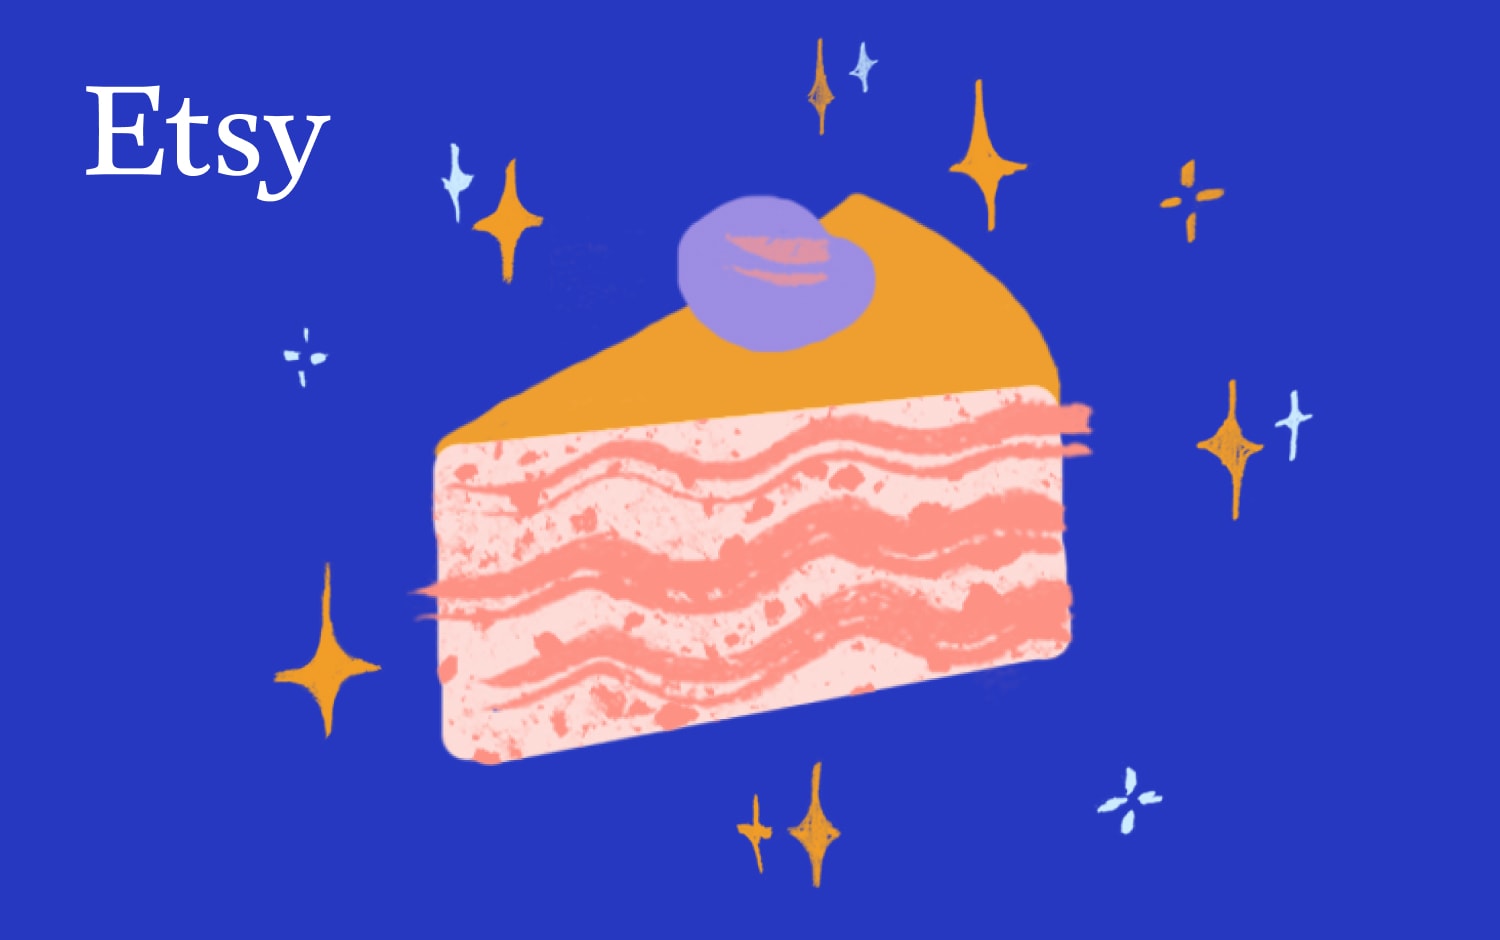 Ilustração de uma fatia de bolo por camadas, com glacé cor-de-rosa e uma decoração roxa semelhante a uma baga no topo. O bolo está sobre um fundo azul-escuro, salpicado com várias centelhas brancas e amarelas. No canto superior esquerdo, está um logótipo Etsy.